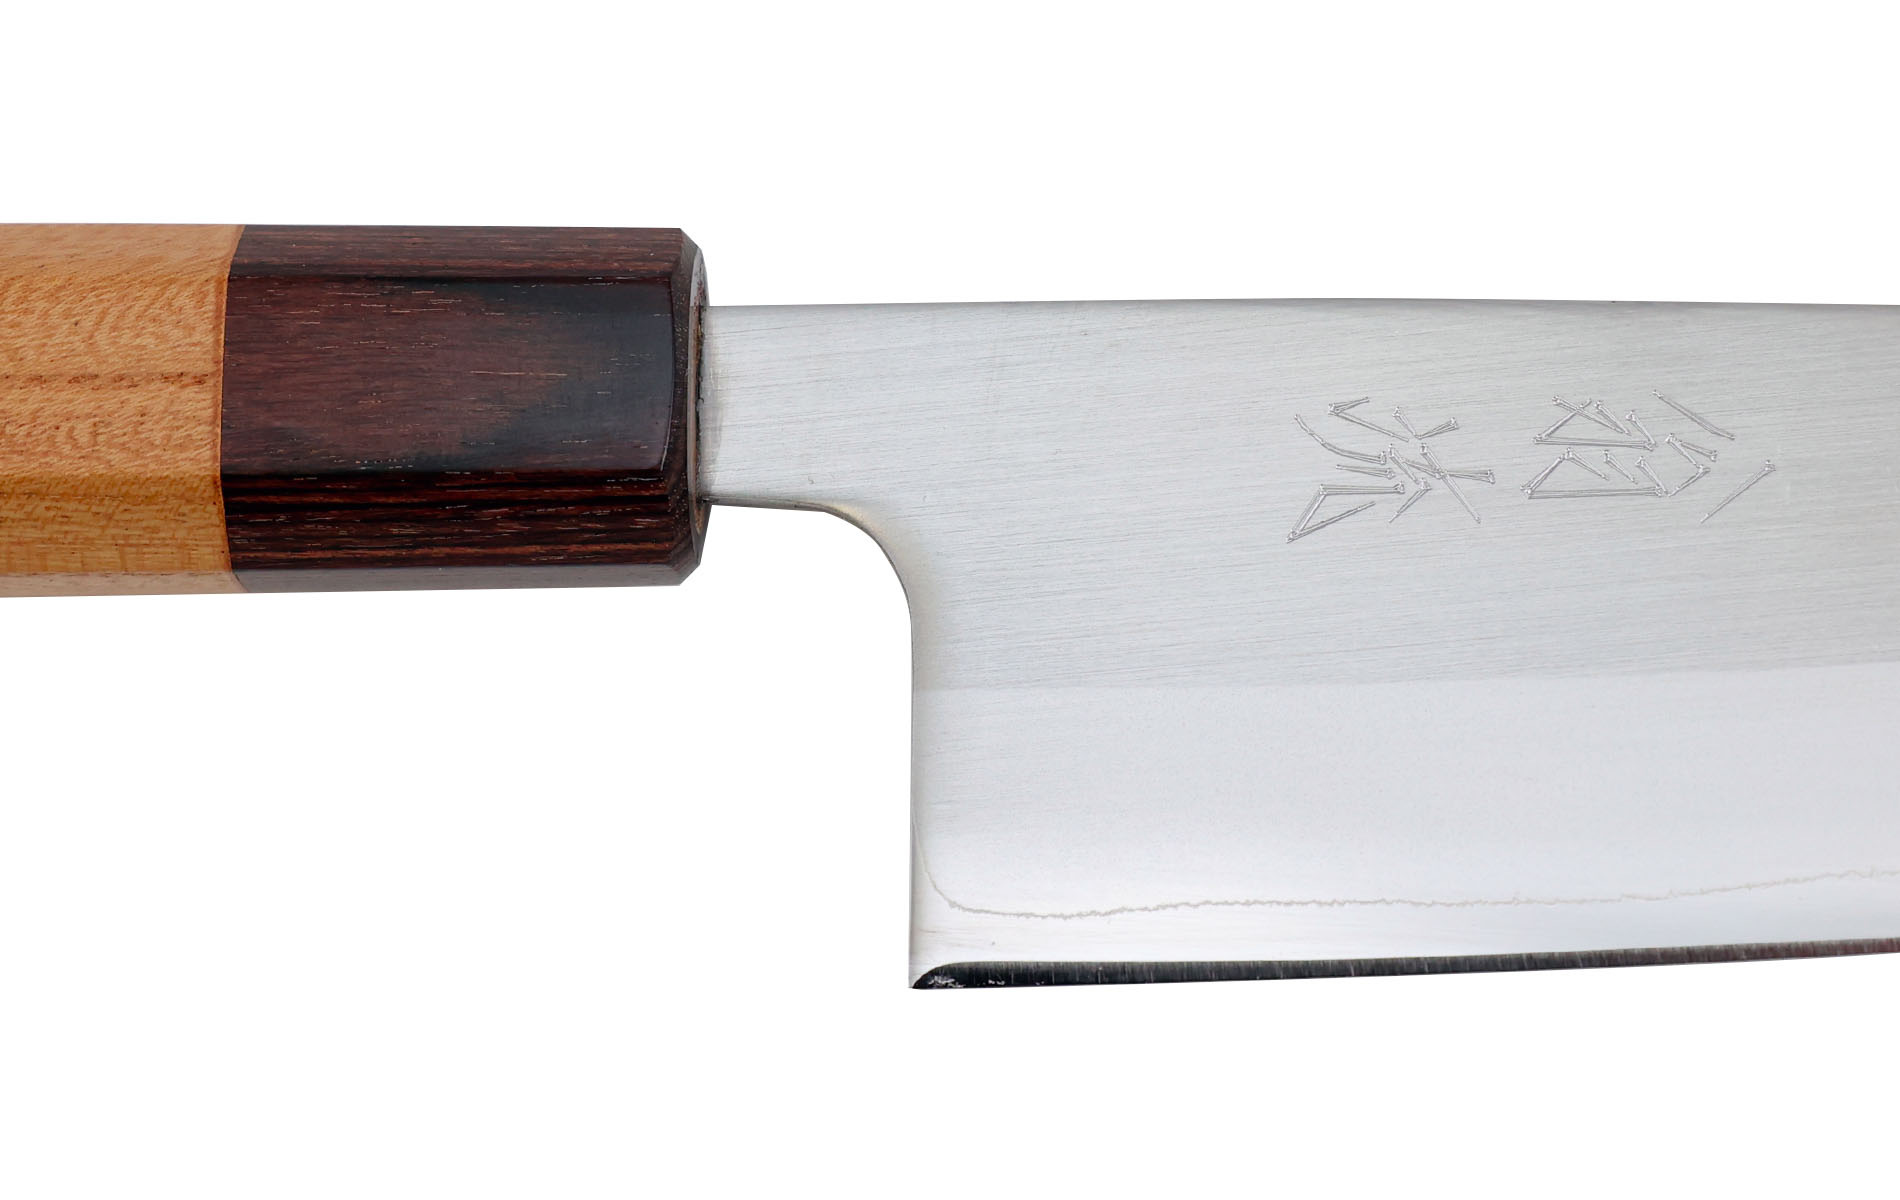 Couteau japonais Hado Sumi White Paper steel n°1 - Couteau santoku 16,5 cm